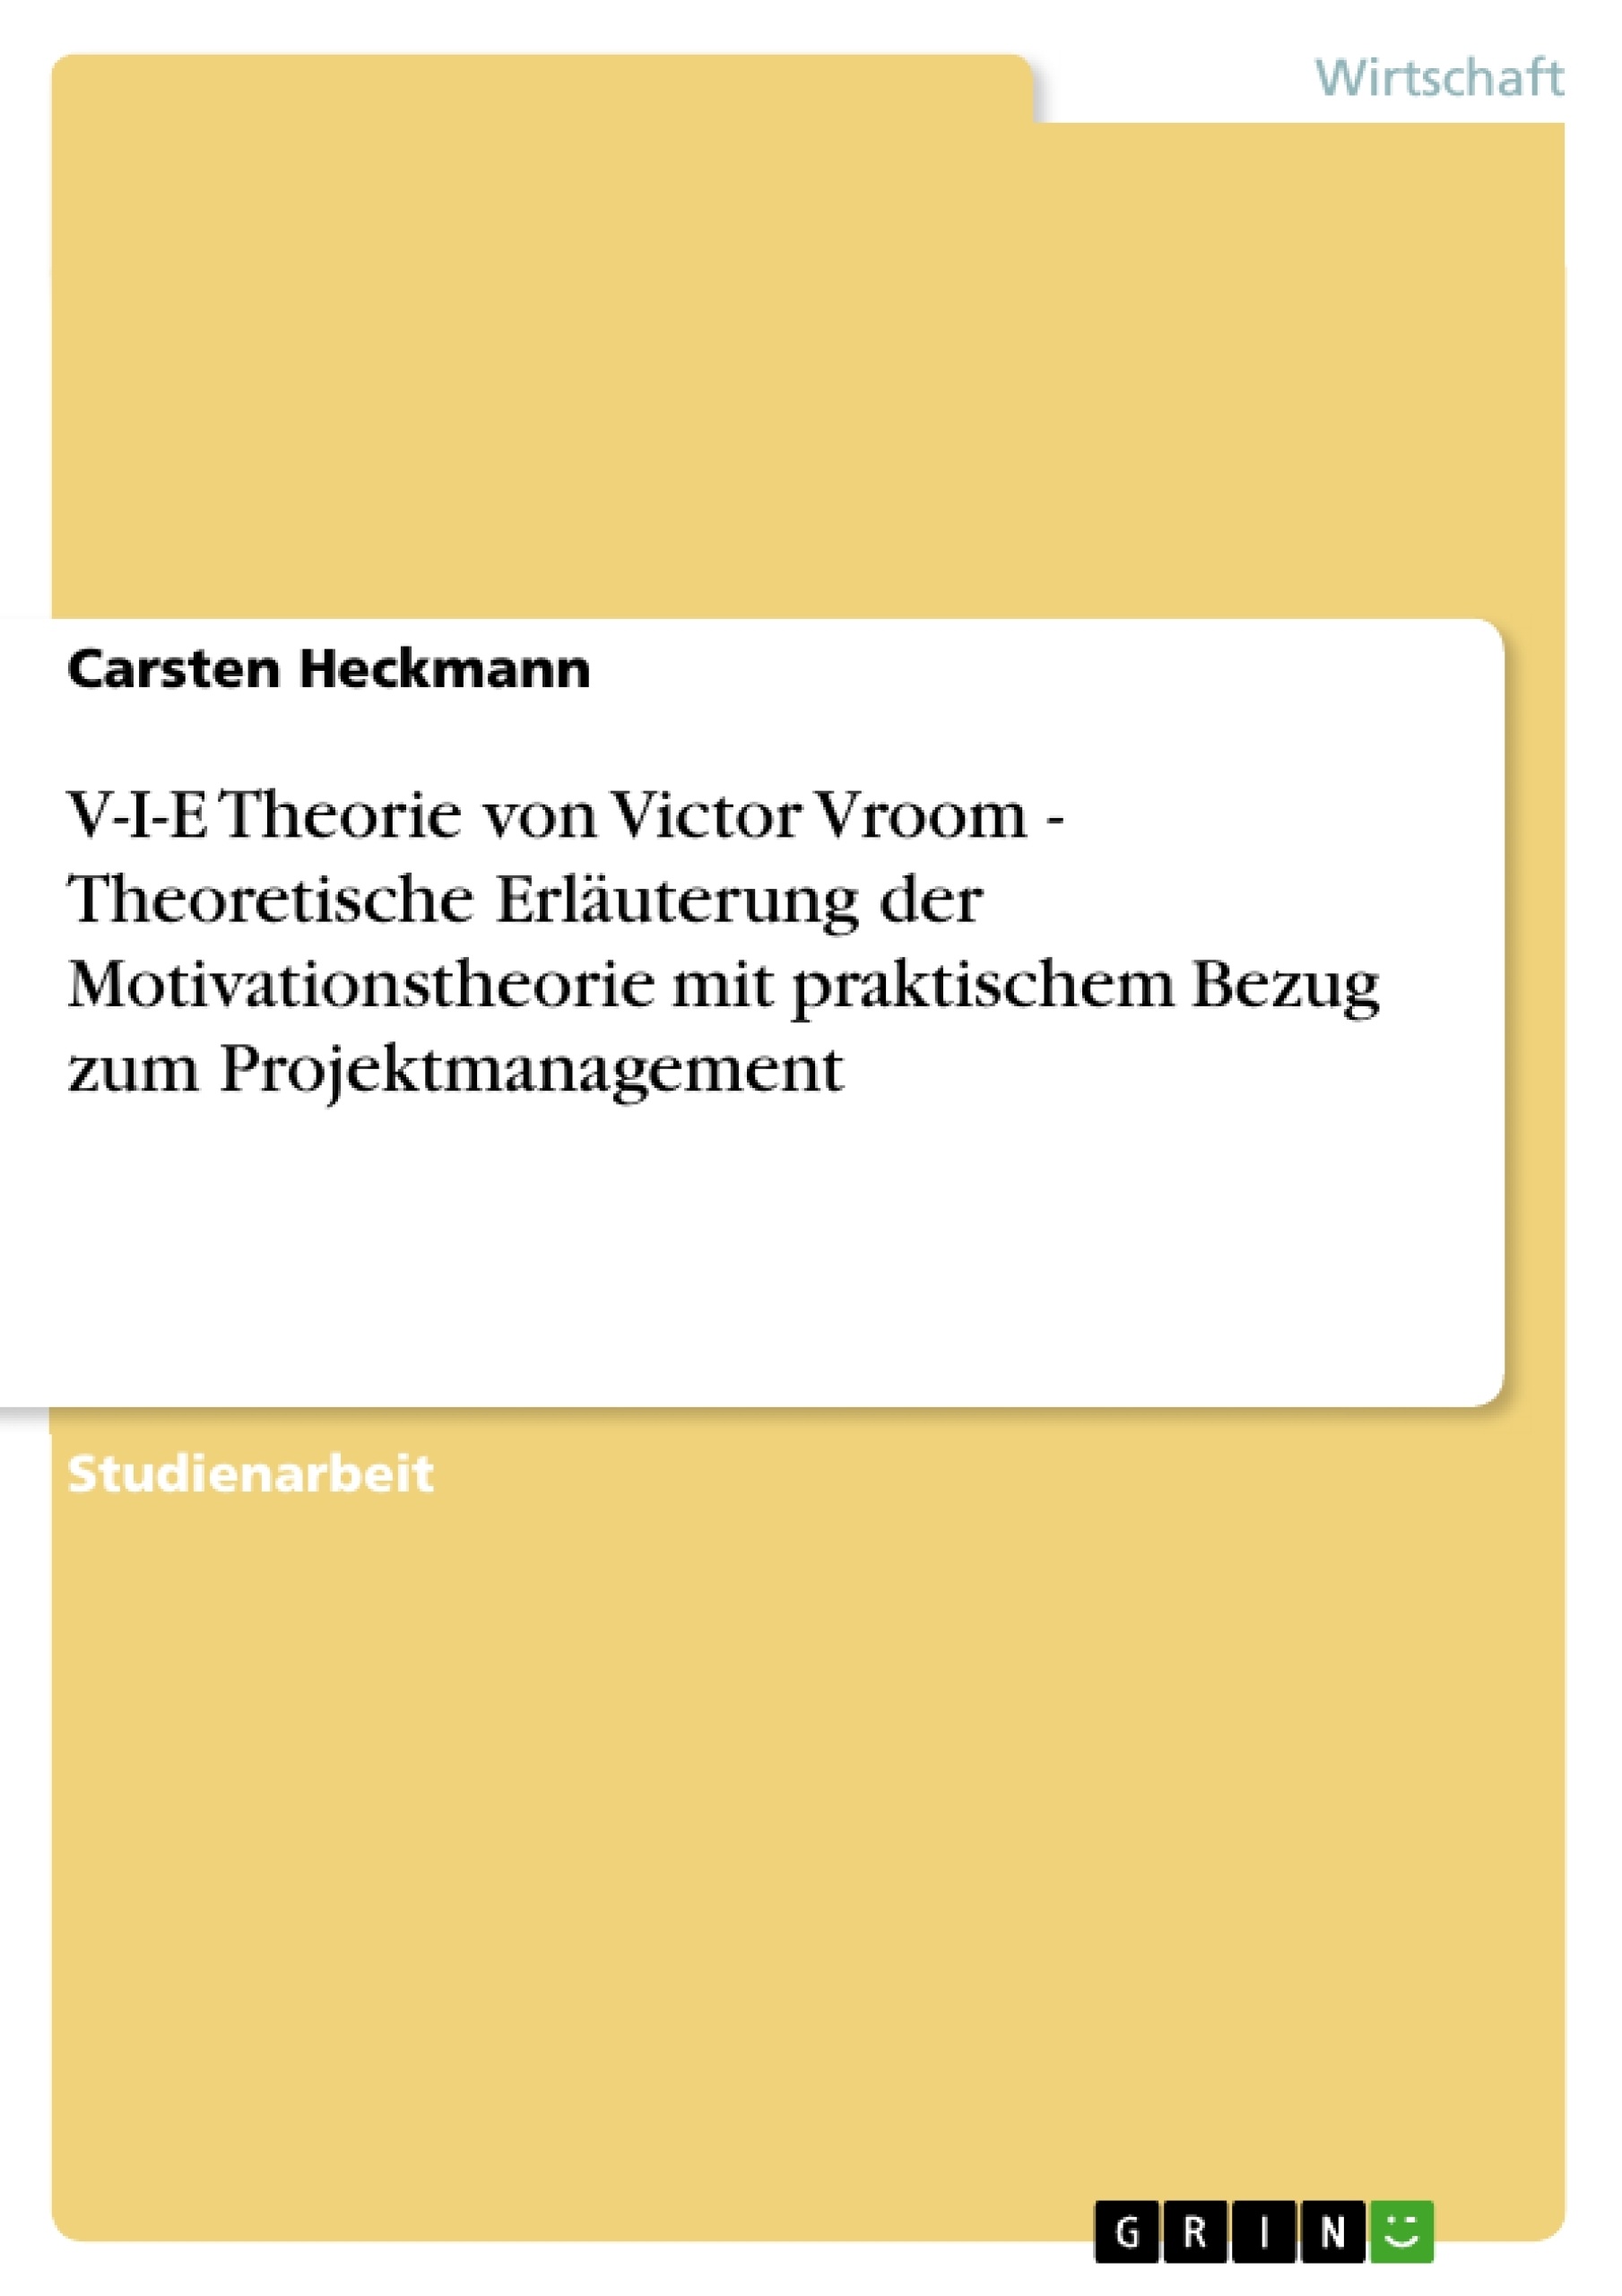 Title: V-I-E Theorie von Victor Vroom - Theoretische Erläuterung der Motivationstheorie mit praktischem Bezug zum Projektmanagement